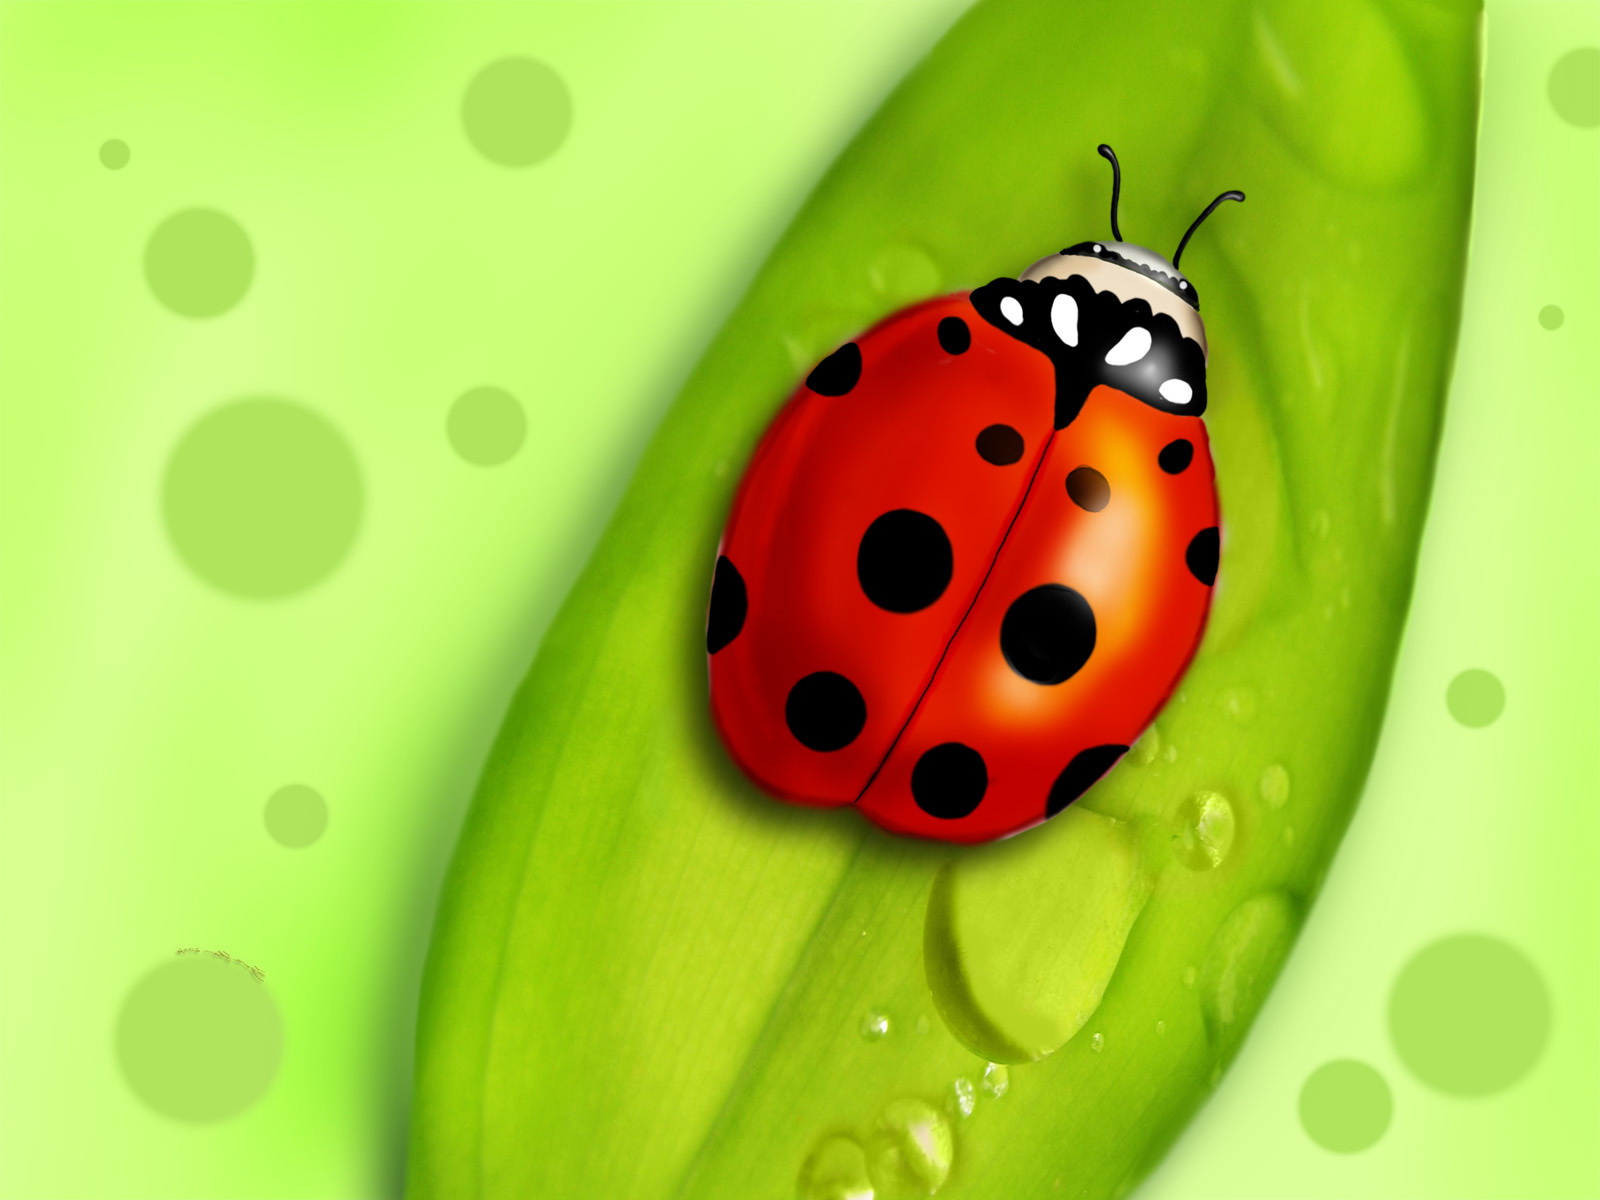 Lady Bug Wallpaper - Ladybug On Leaf Cartoon - HD Wallpaper 